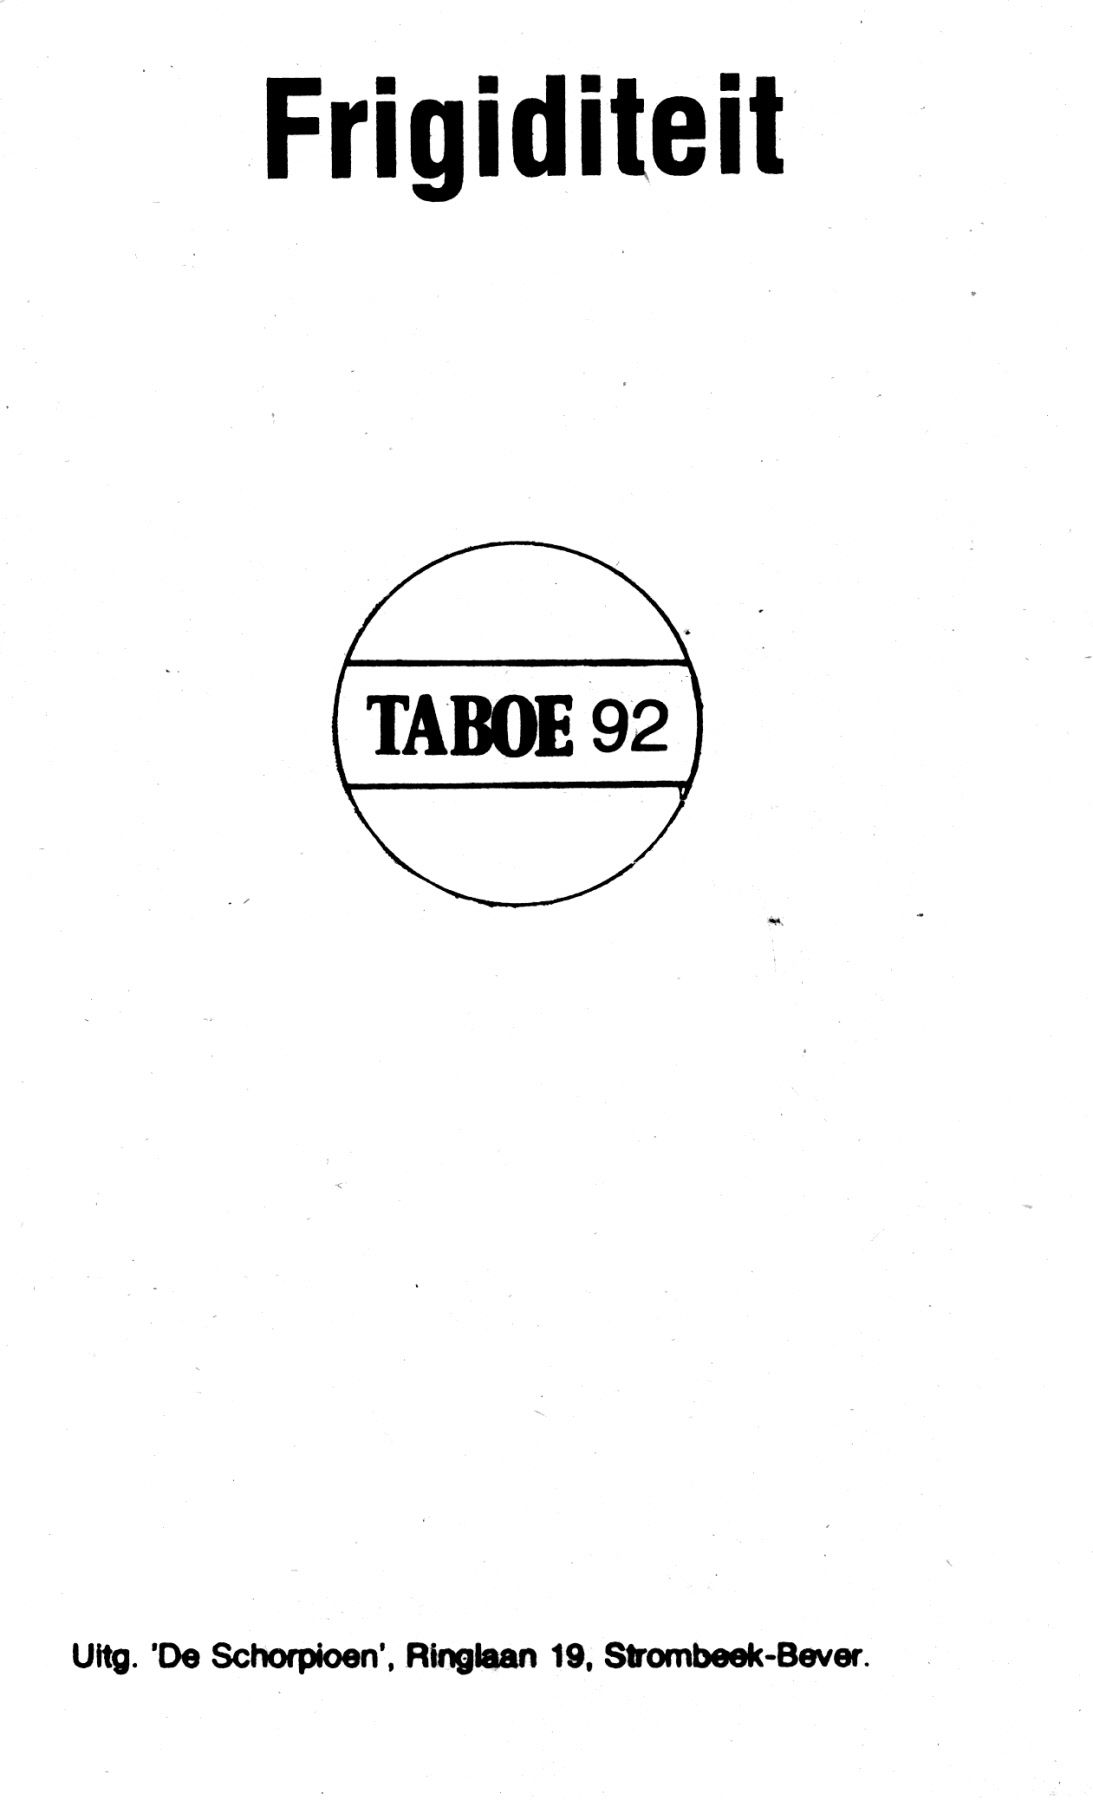 Taboe - 092 - Frigiditeit (Dutch) 2